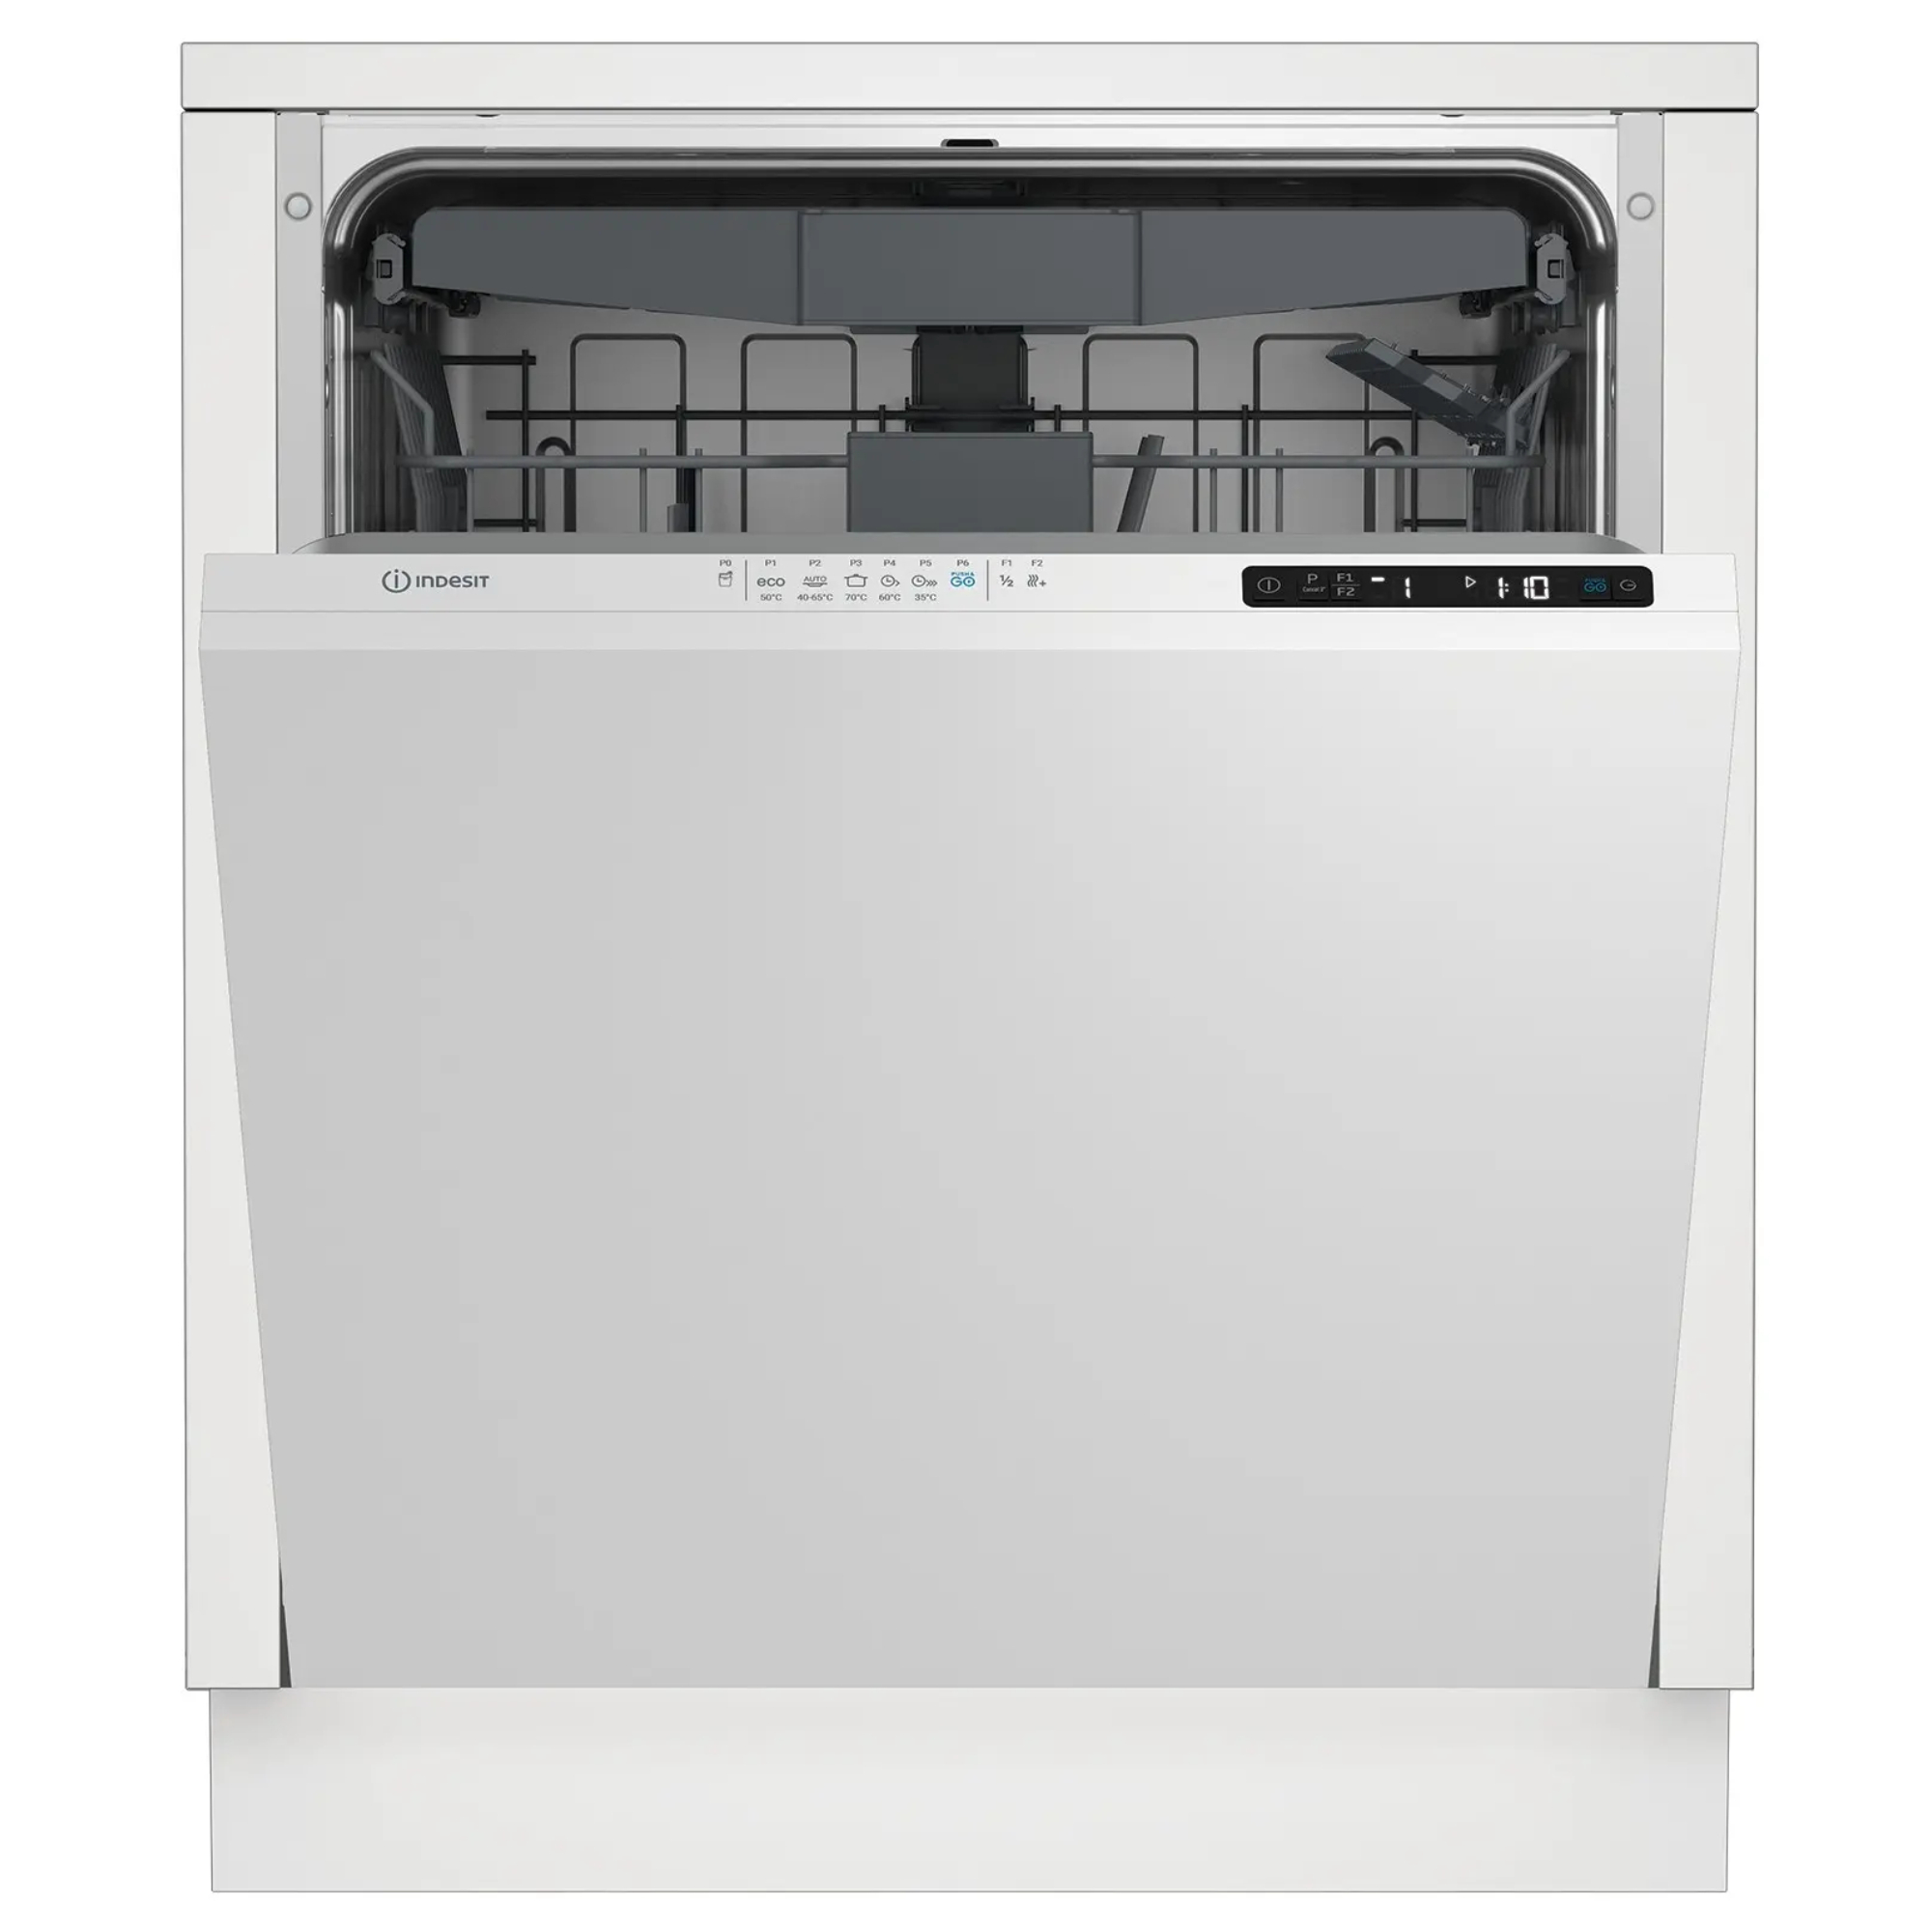 Встраиваемая посудомоечная машина Indesit DI 5C65 AED встраиваемая посудомоечная машина indesit di 5c65 aed